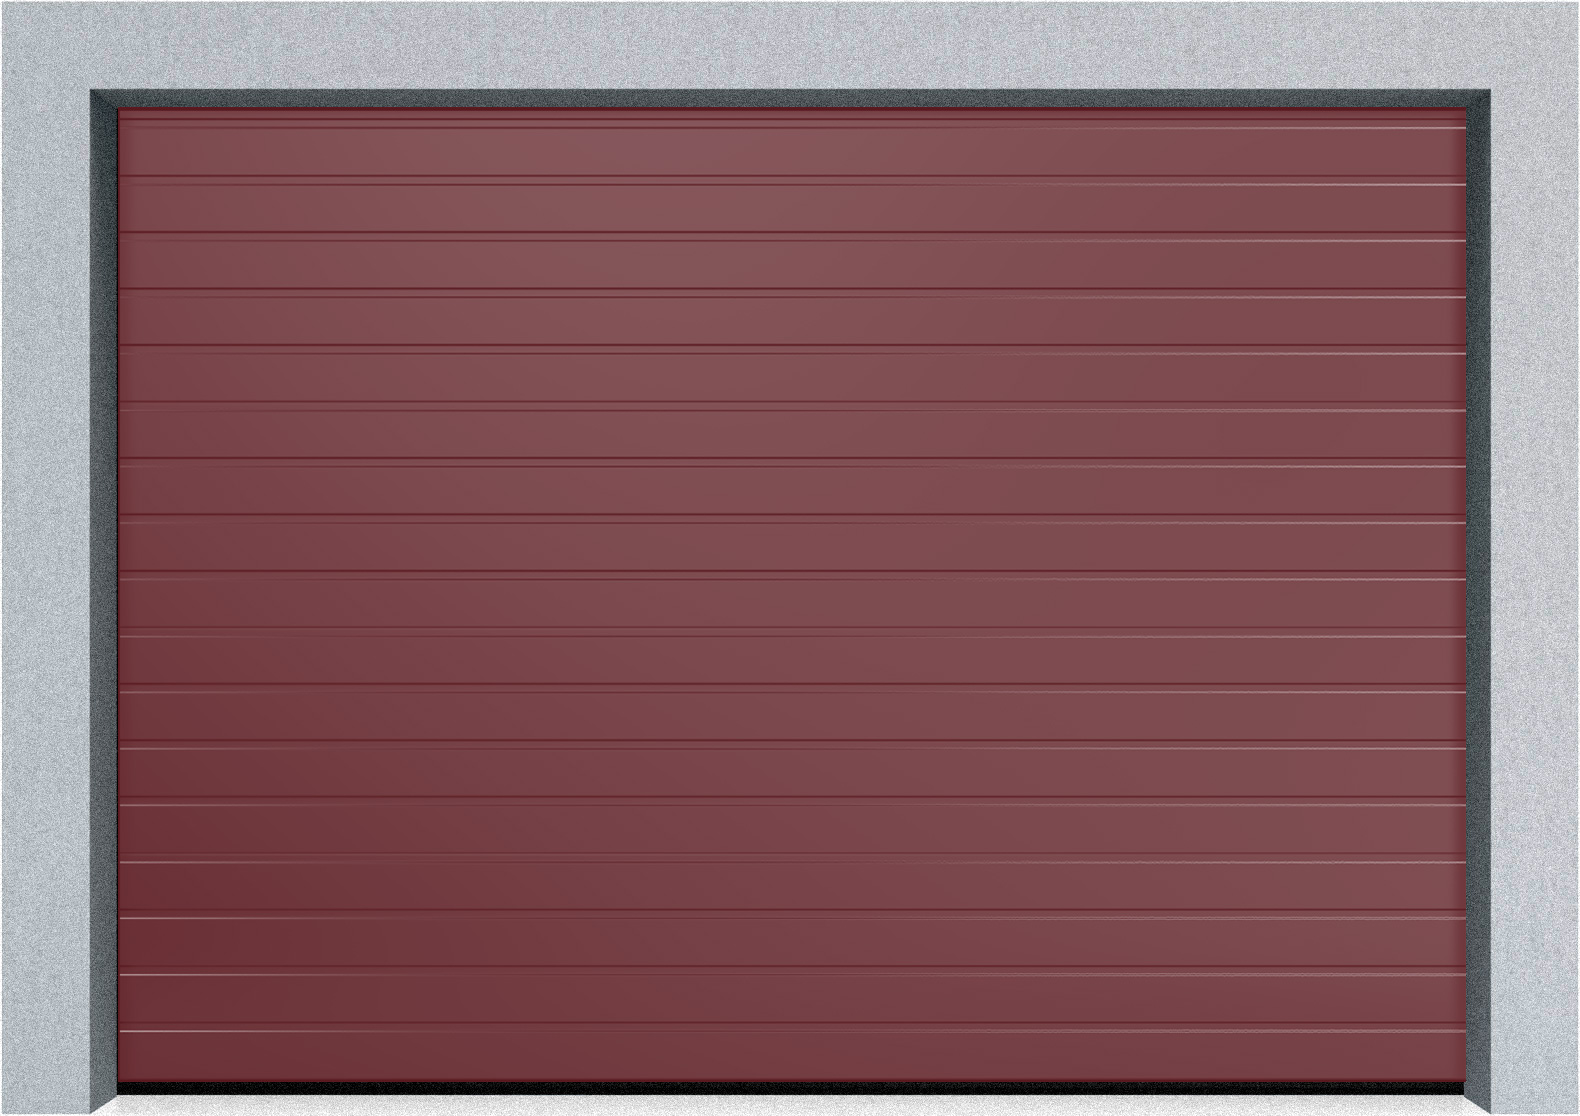  Автоматические секционные промышленные ворота DoorHan ISD ThermalPro 3600x2300 S-гофр, M-гофр, Микроволна стандартные цвета, фото 11 